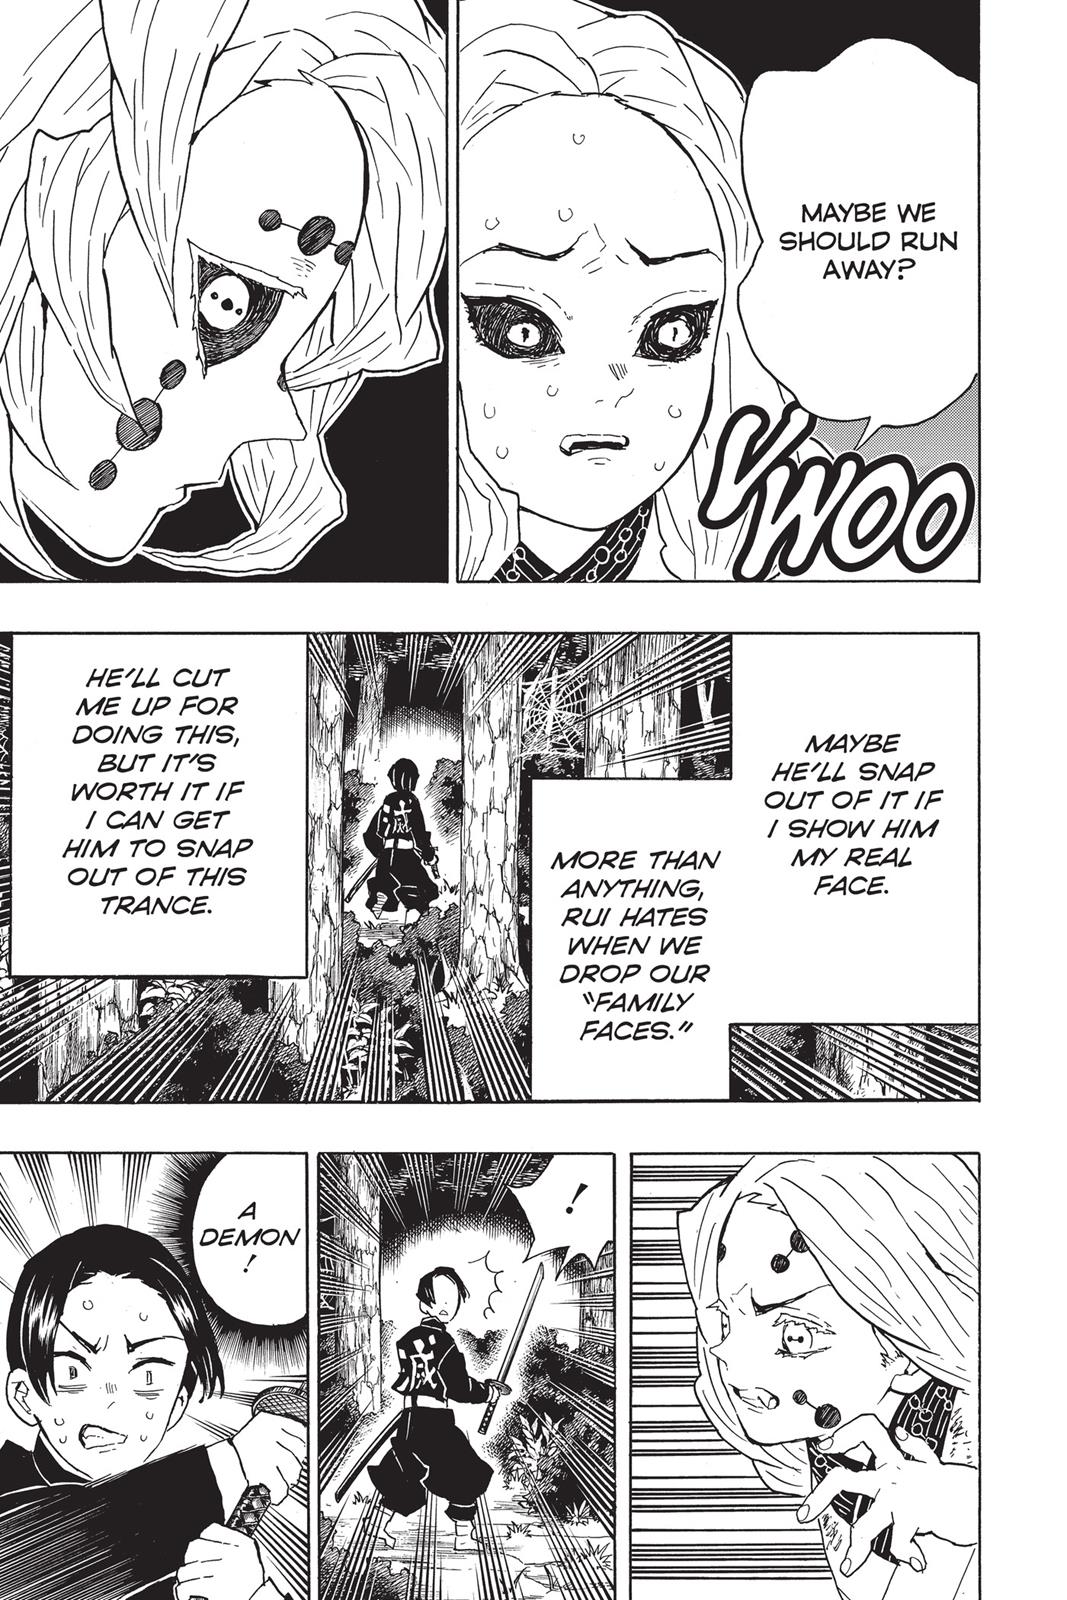 Demon Slayer Manga Manga Chapter - 41 - image 5